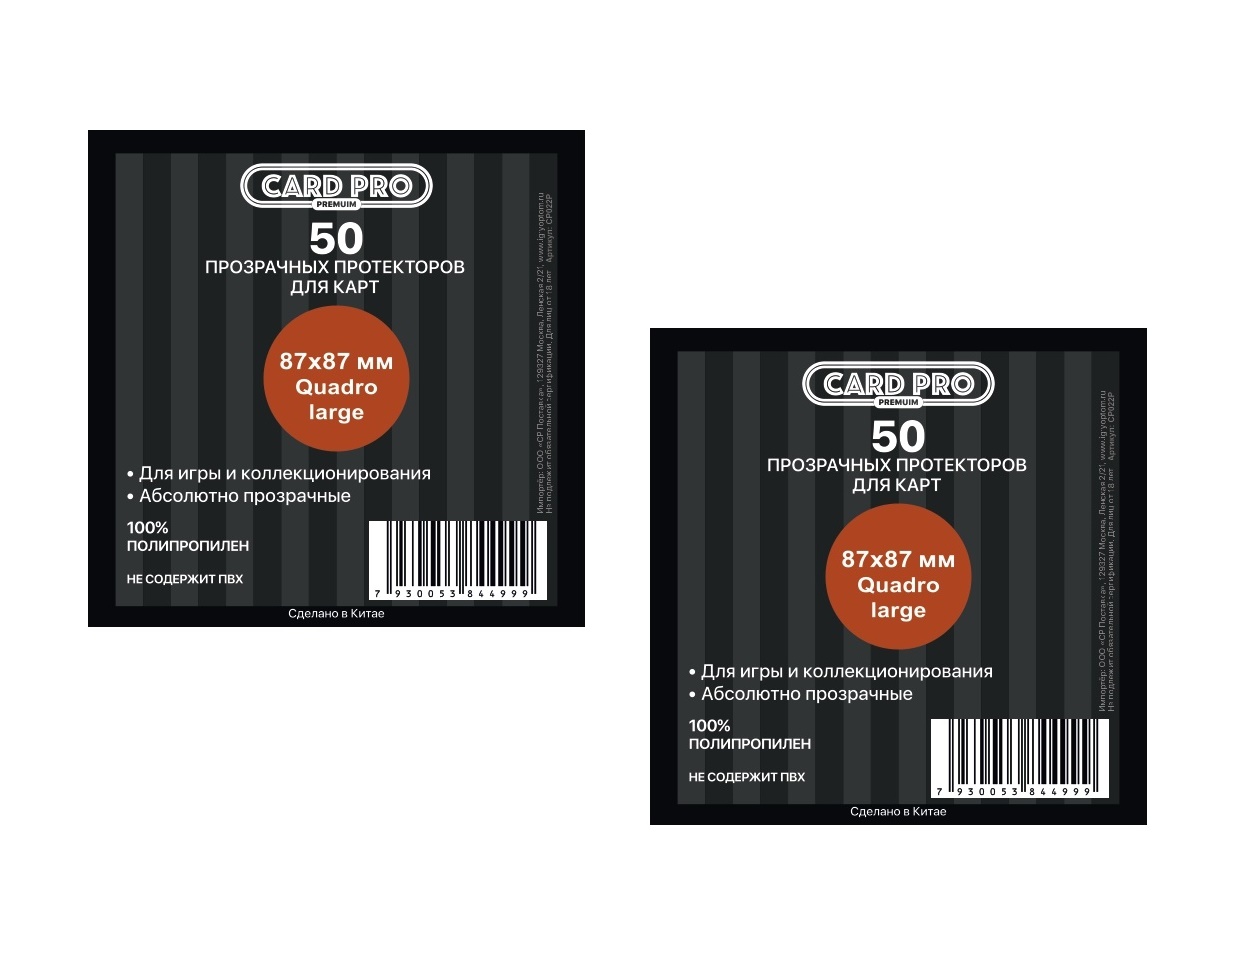 Протекторы Card-Pro PREMIUM Quadro large для настольных игр 50 шт. 87x87 мм. 2 пачки прозрачные протекторы card pro premium для ccg 66x92 мм 2 пачки